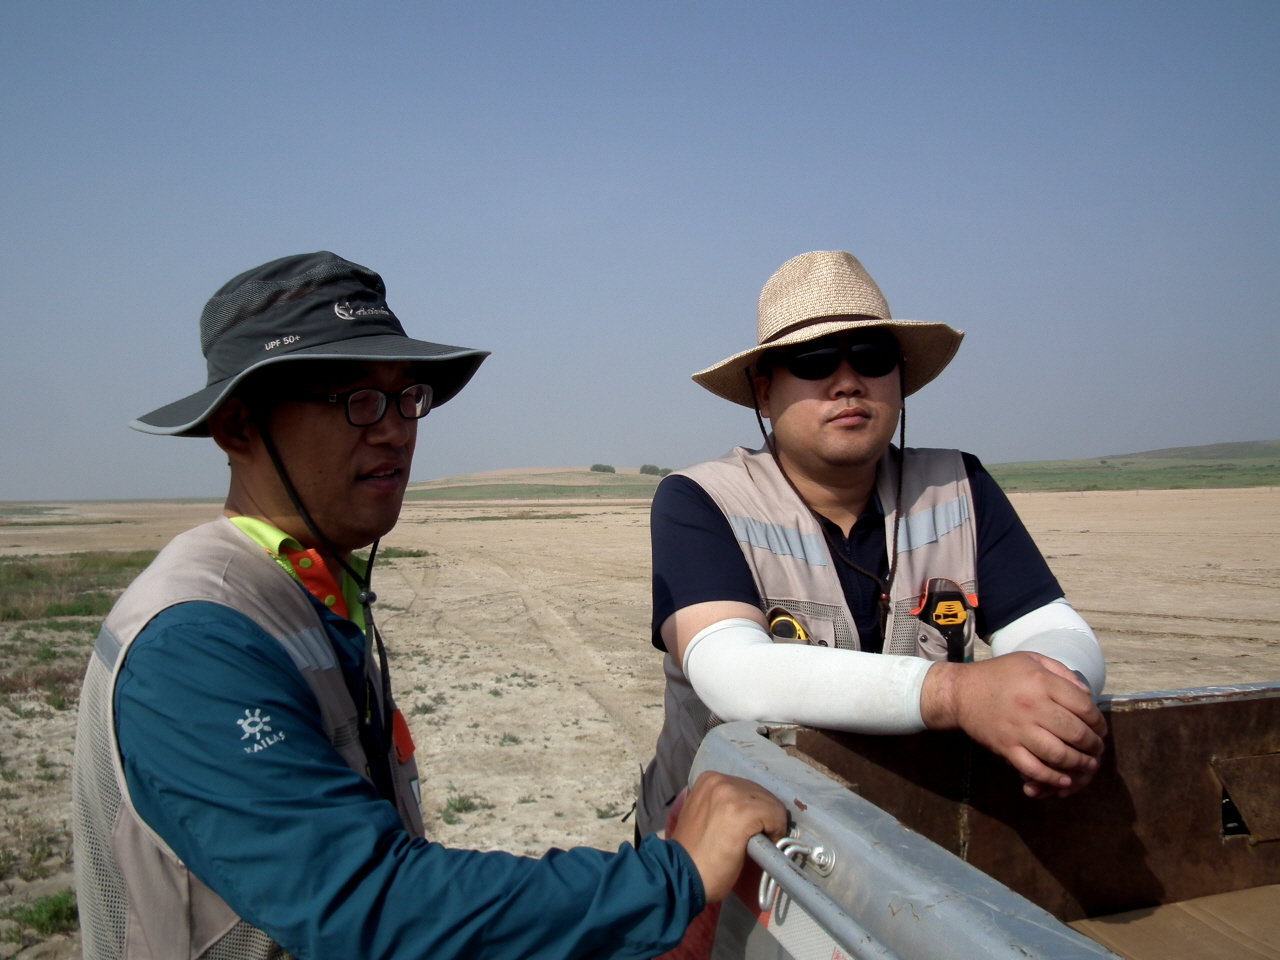 에코피스아시아 북경사무소 박상소 소장(사진 왼쪽)과 경북대 산림자원학과 서형민 교수(사진 오른쪽)는 사막에서 활동하고 있지만, 늘 푸른 꿈을 꾸고 있다. 